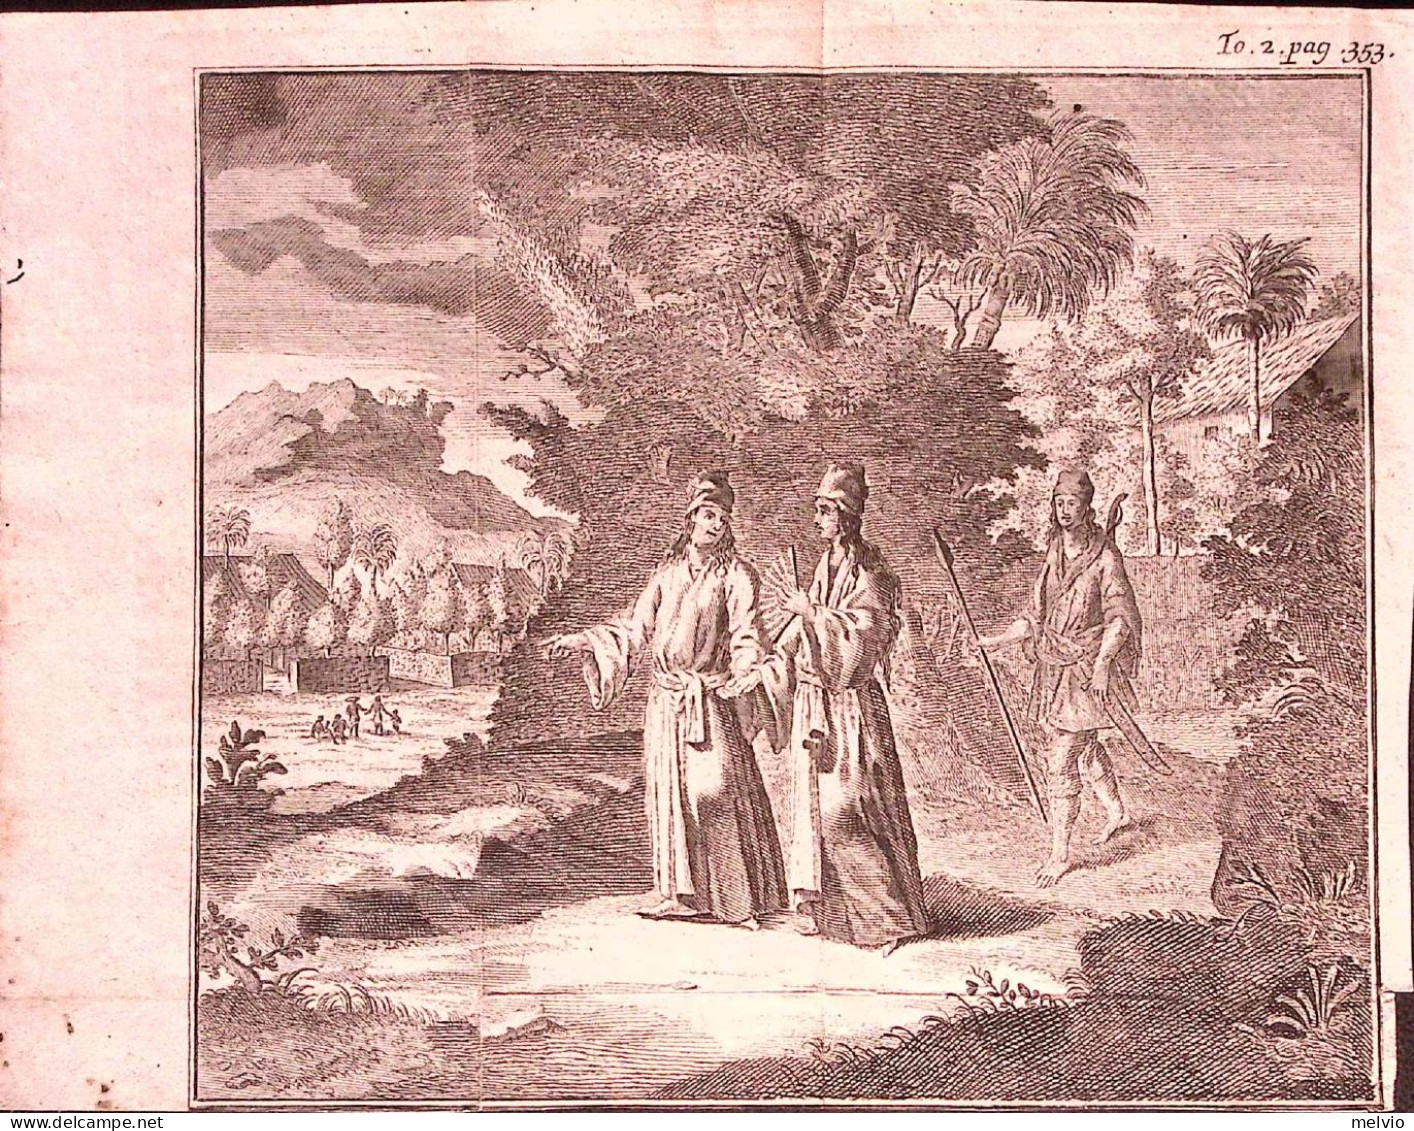 1730-Tirion Tonkin Vietnam Personaggi In Costume E Abitazioni Dim.19,5x16,5 Cm. - Stiche & Gravuren